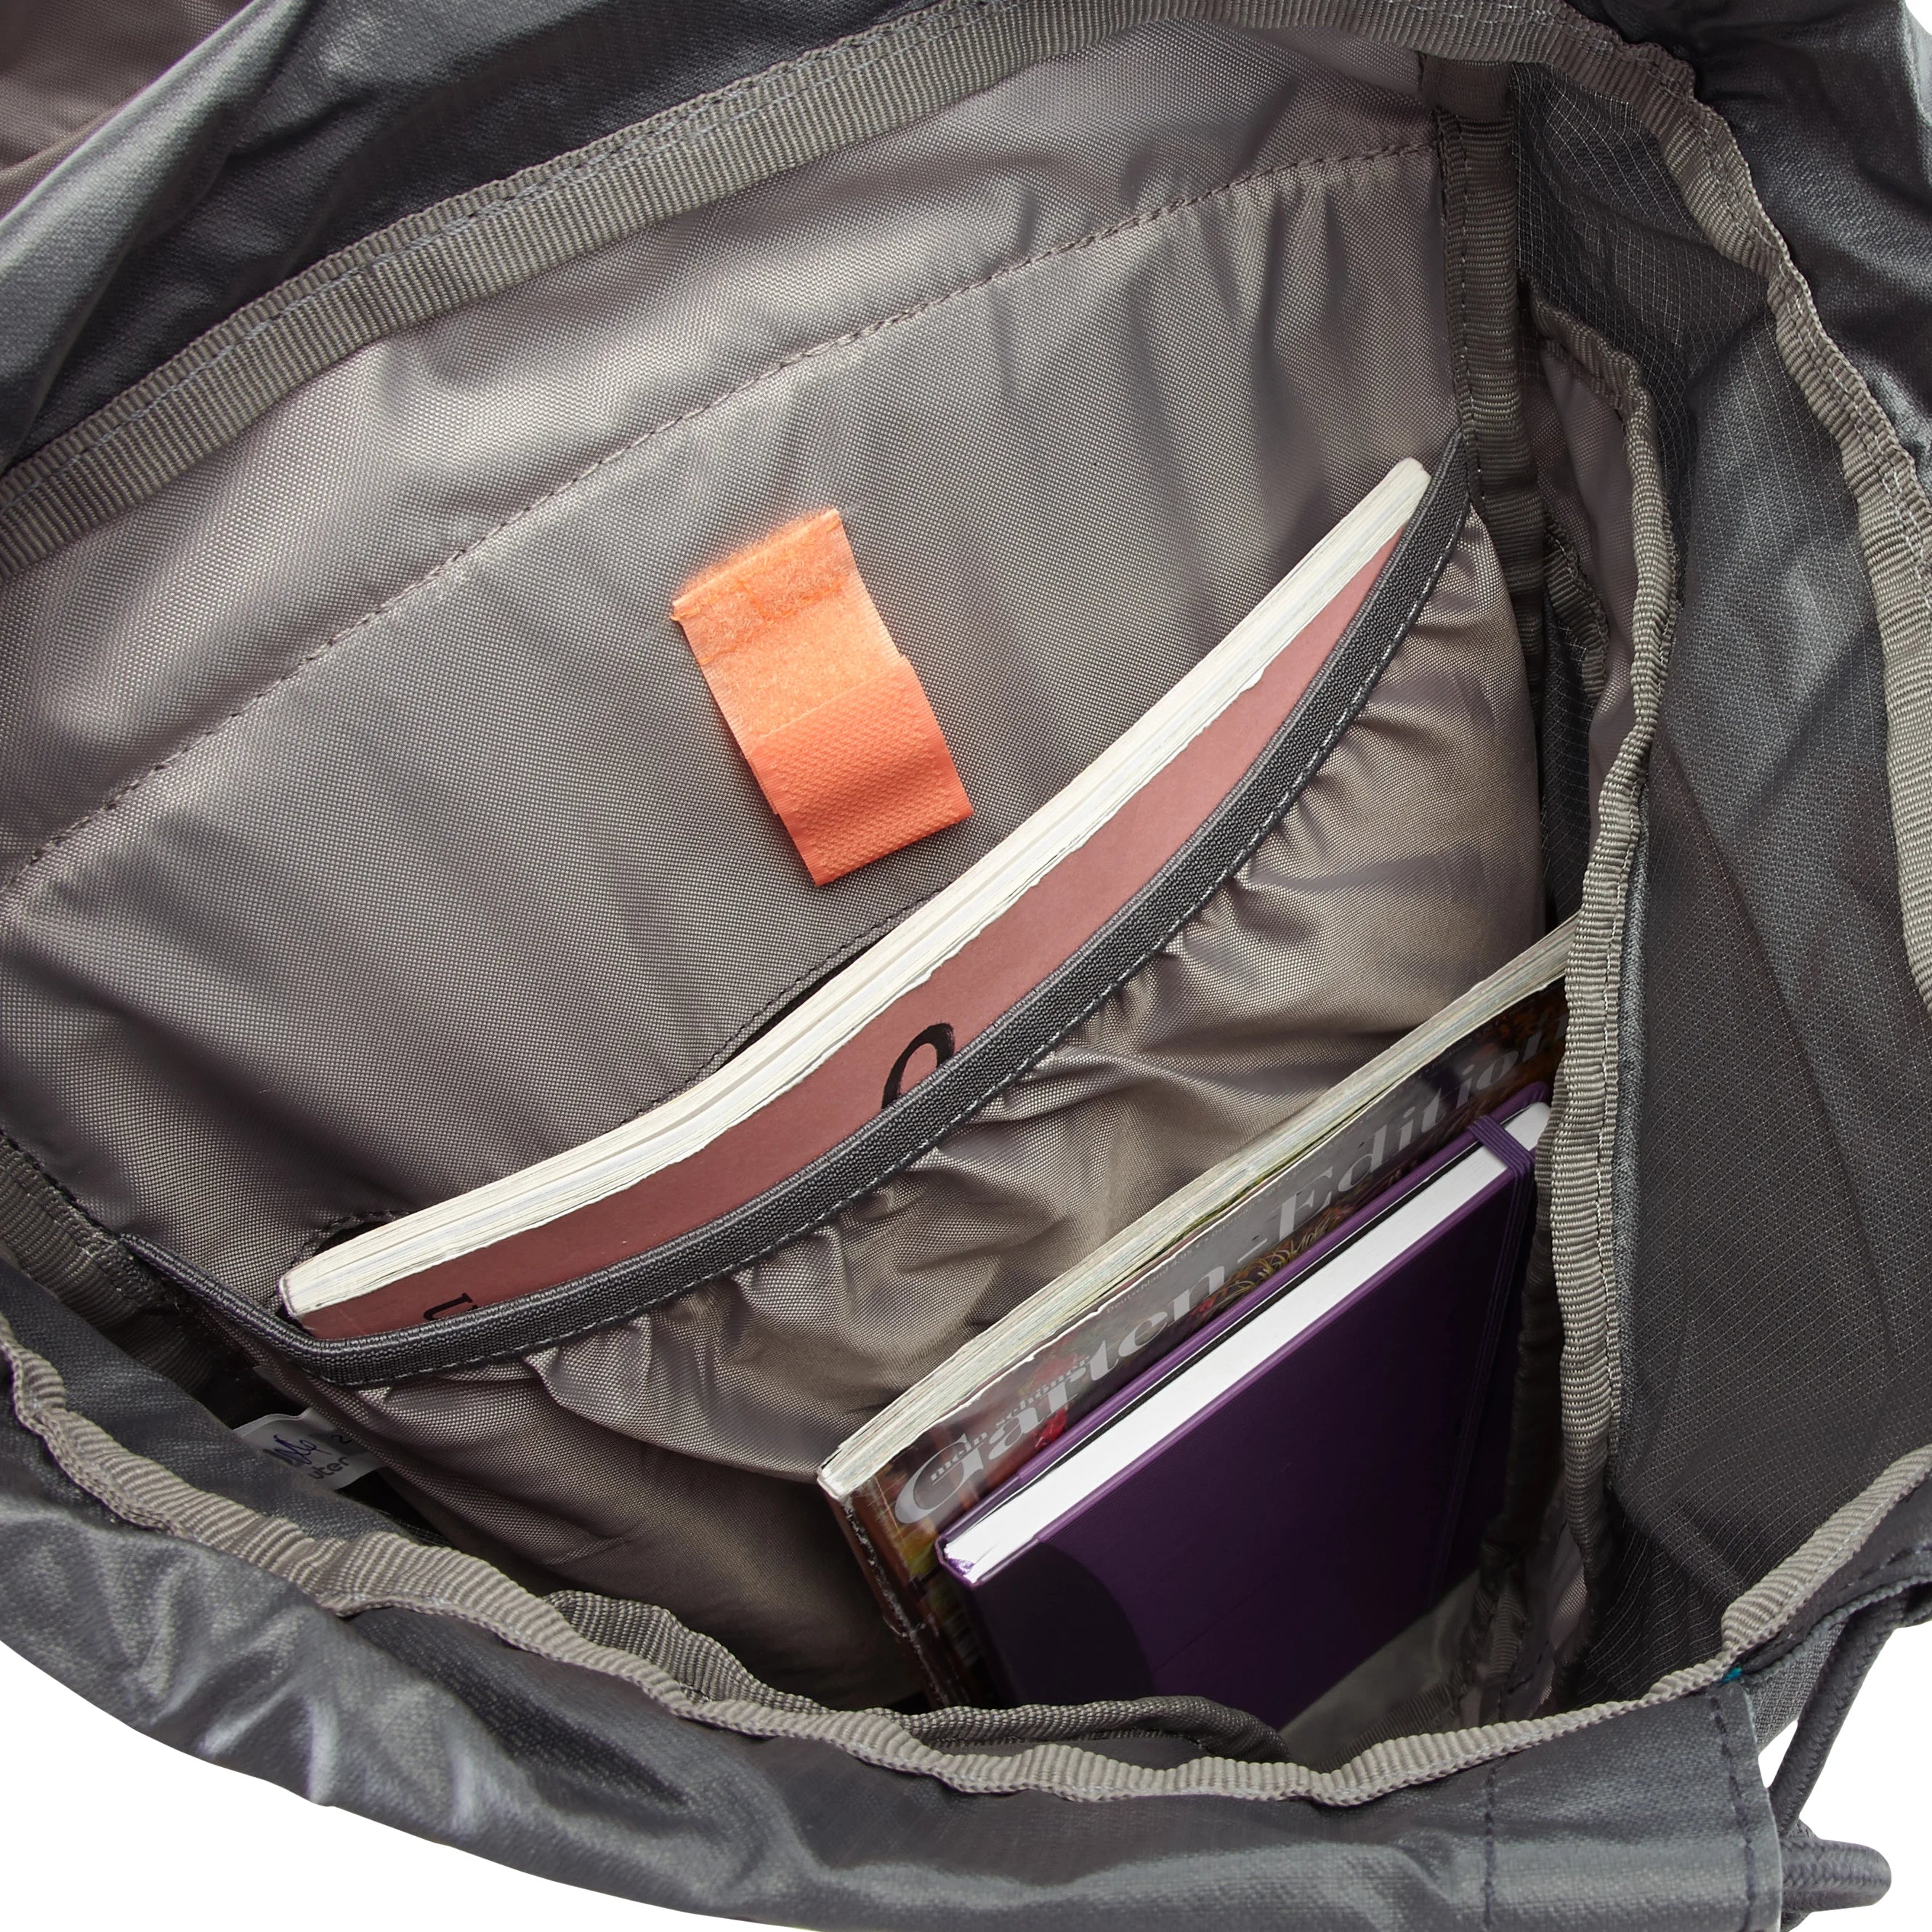 Deuter Daypack AC Lite 22 SL sac à dos de randonnée 52 cm - Shale-Graphite